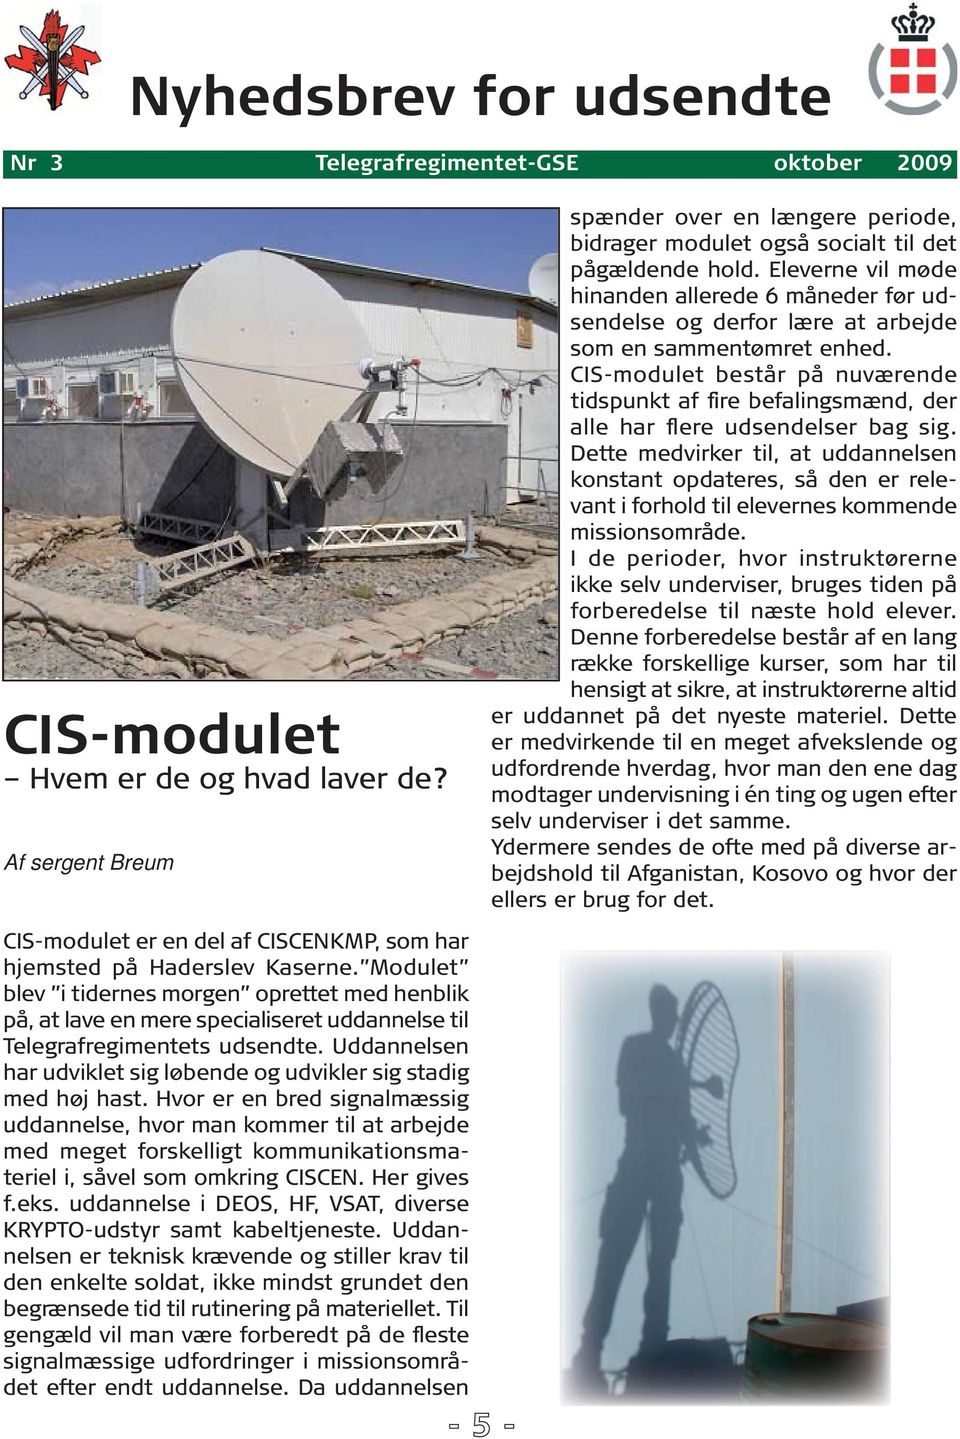 CIS-modulet består på nuværende tidspunkt af fire befalingsmænd, der alle har flere udsendelser bag sig.